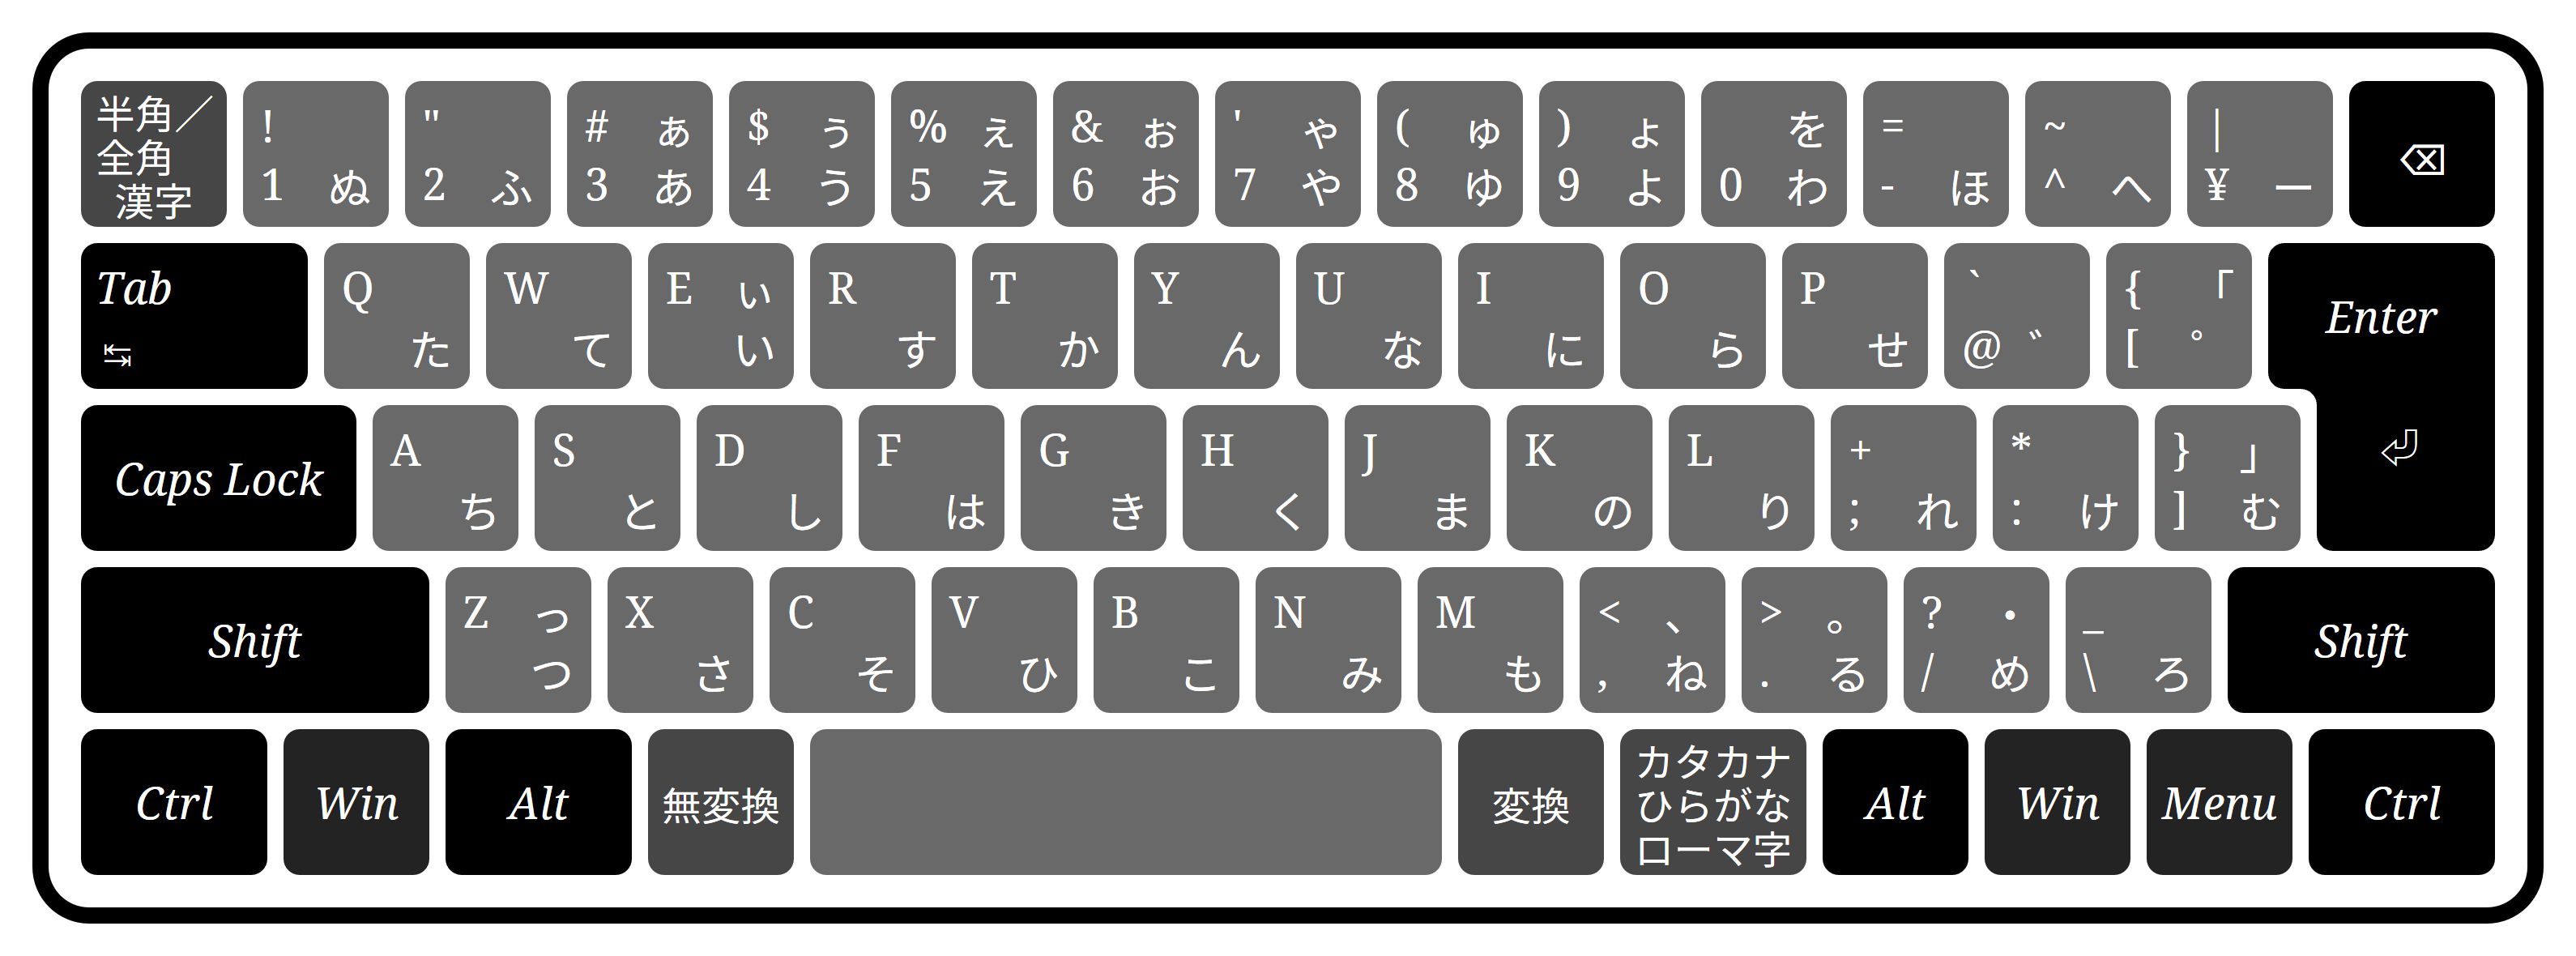 Windows 日语键盘的「ろ」键可以输入反斜杠